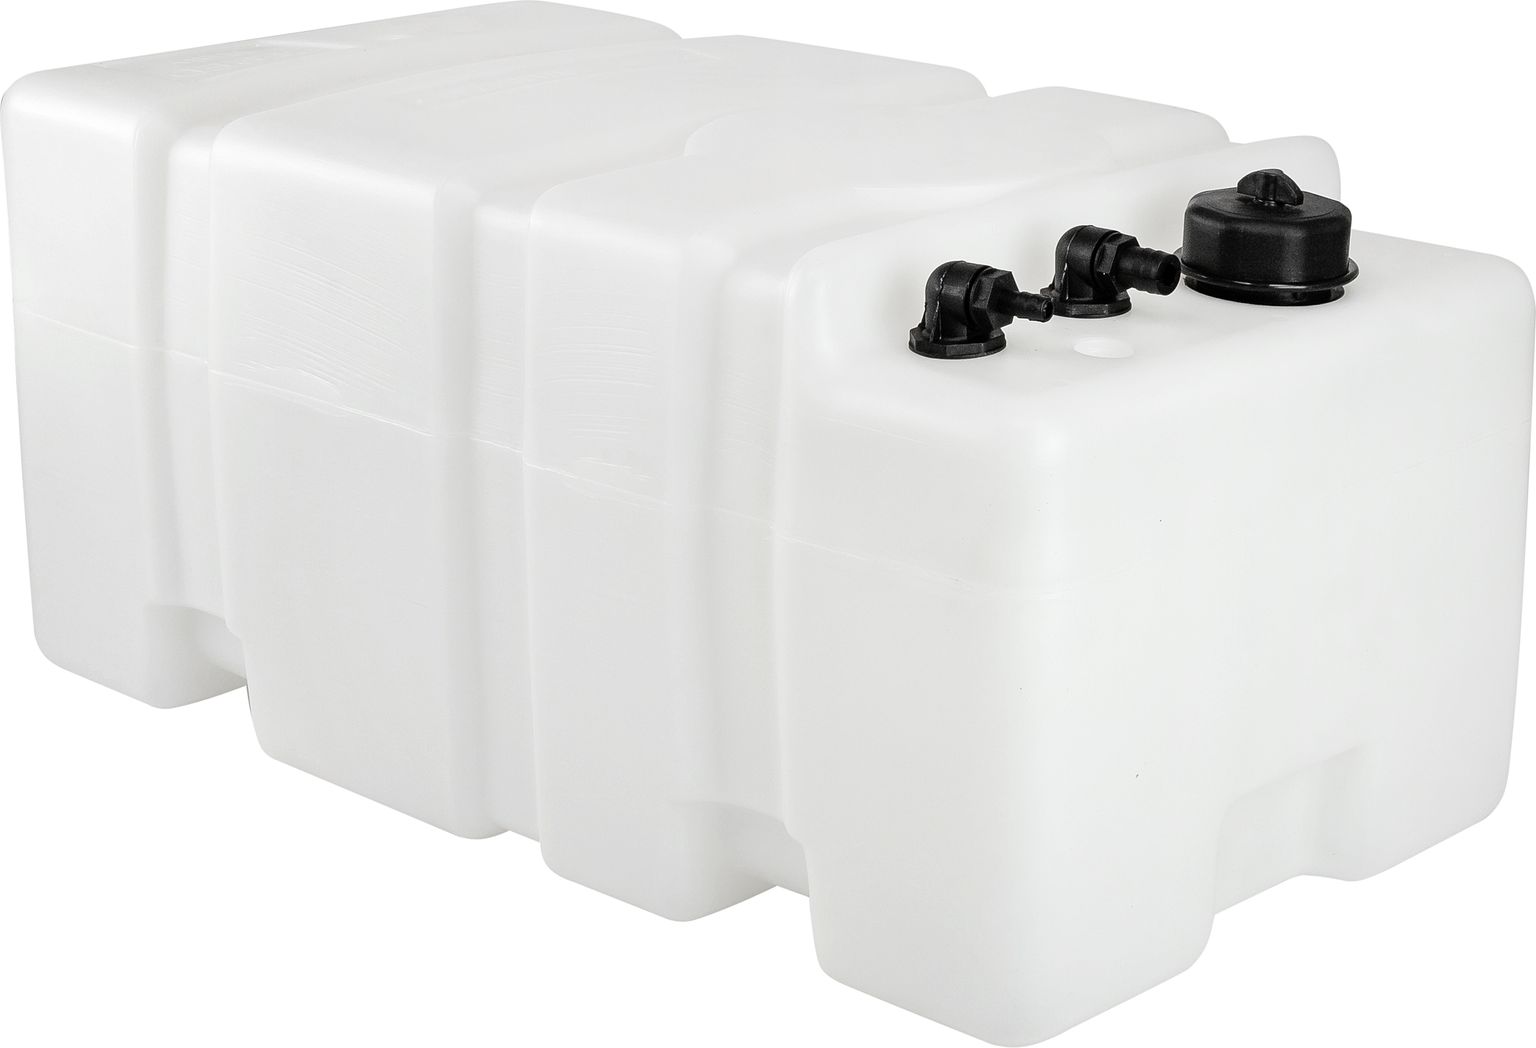 Бак стационарный для воды TITANO, 60 литров 662860 пластиковая канистра для технических жидкостей главдор